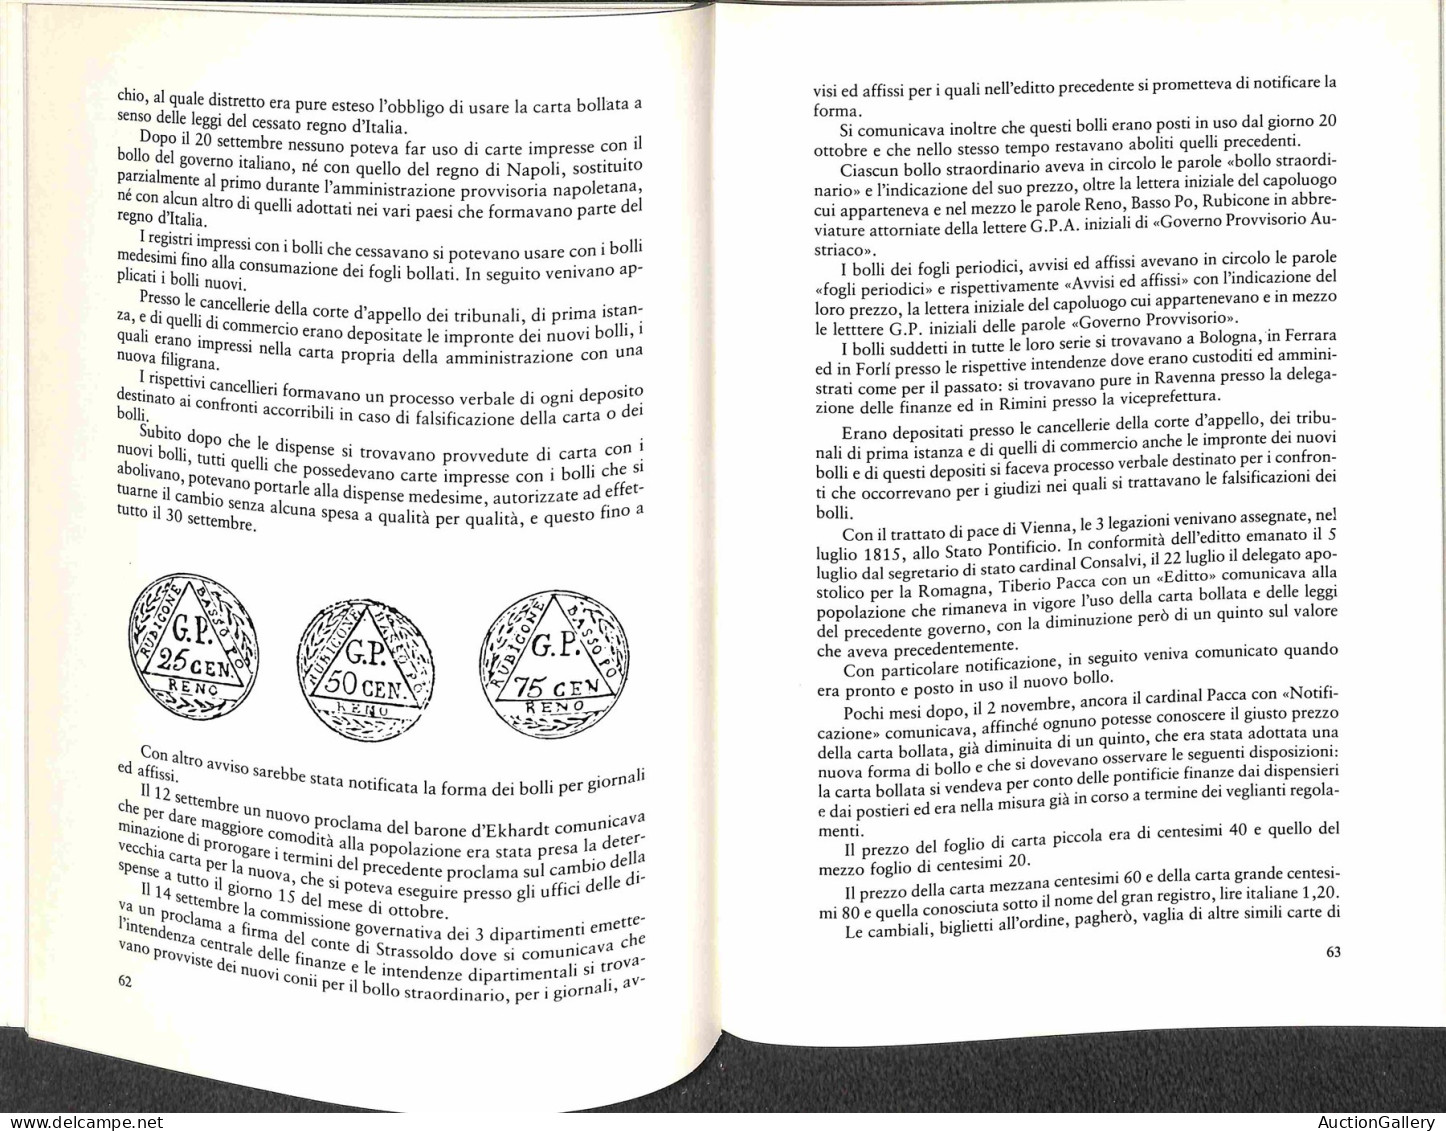 Biblioteca Filatelica - Italia - Storia Della Carta Bollata In Romagna 1741/1861 - G. Geminiani E G. Piccino - Ed. 1980 - Other & Unclassified